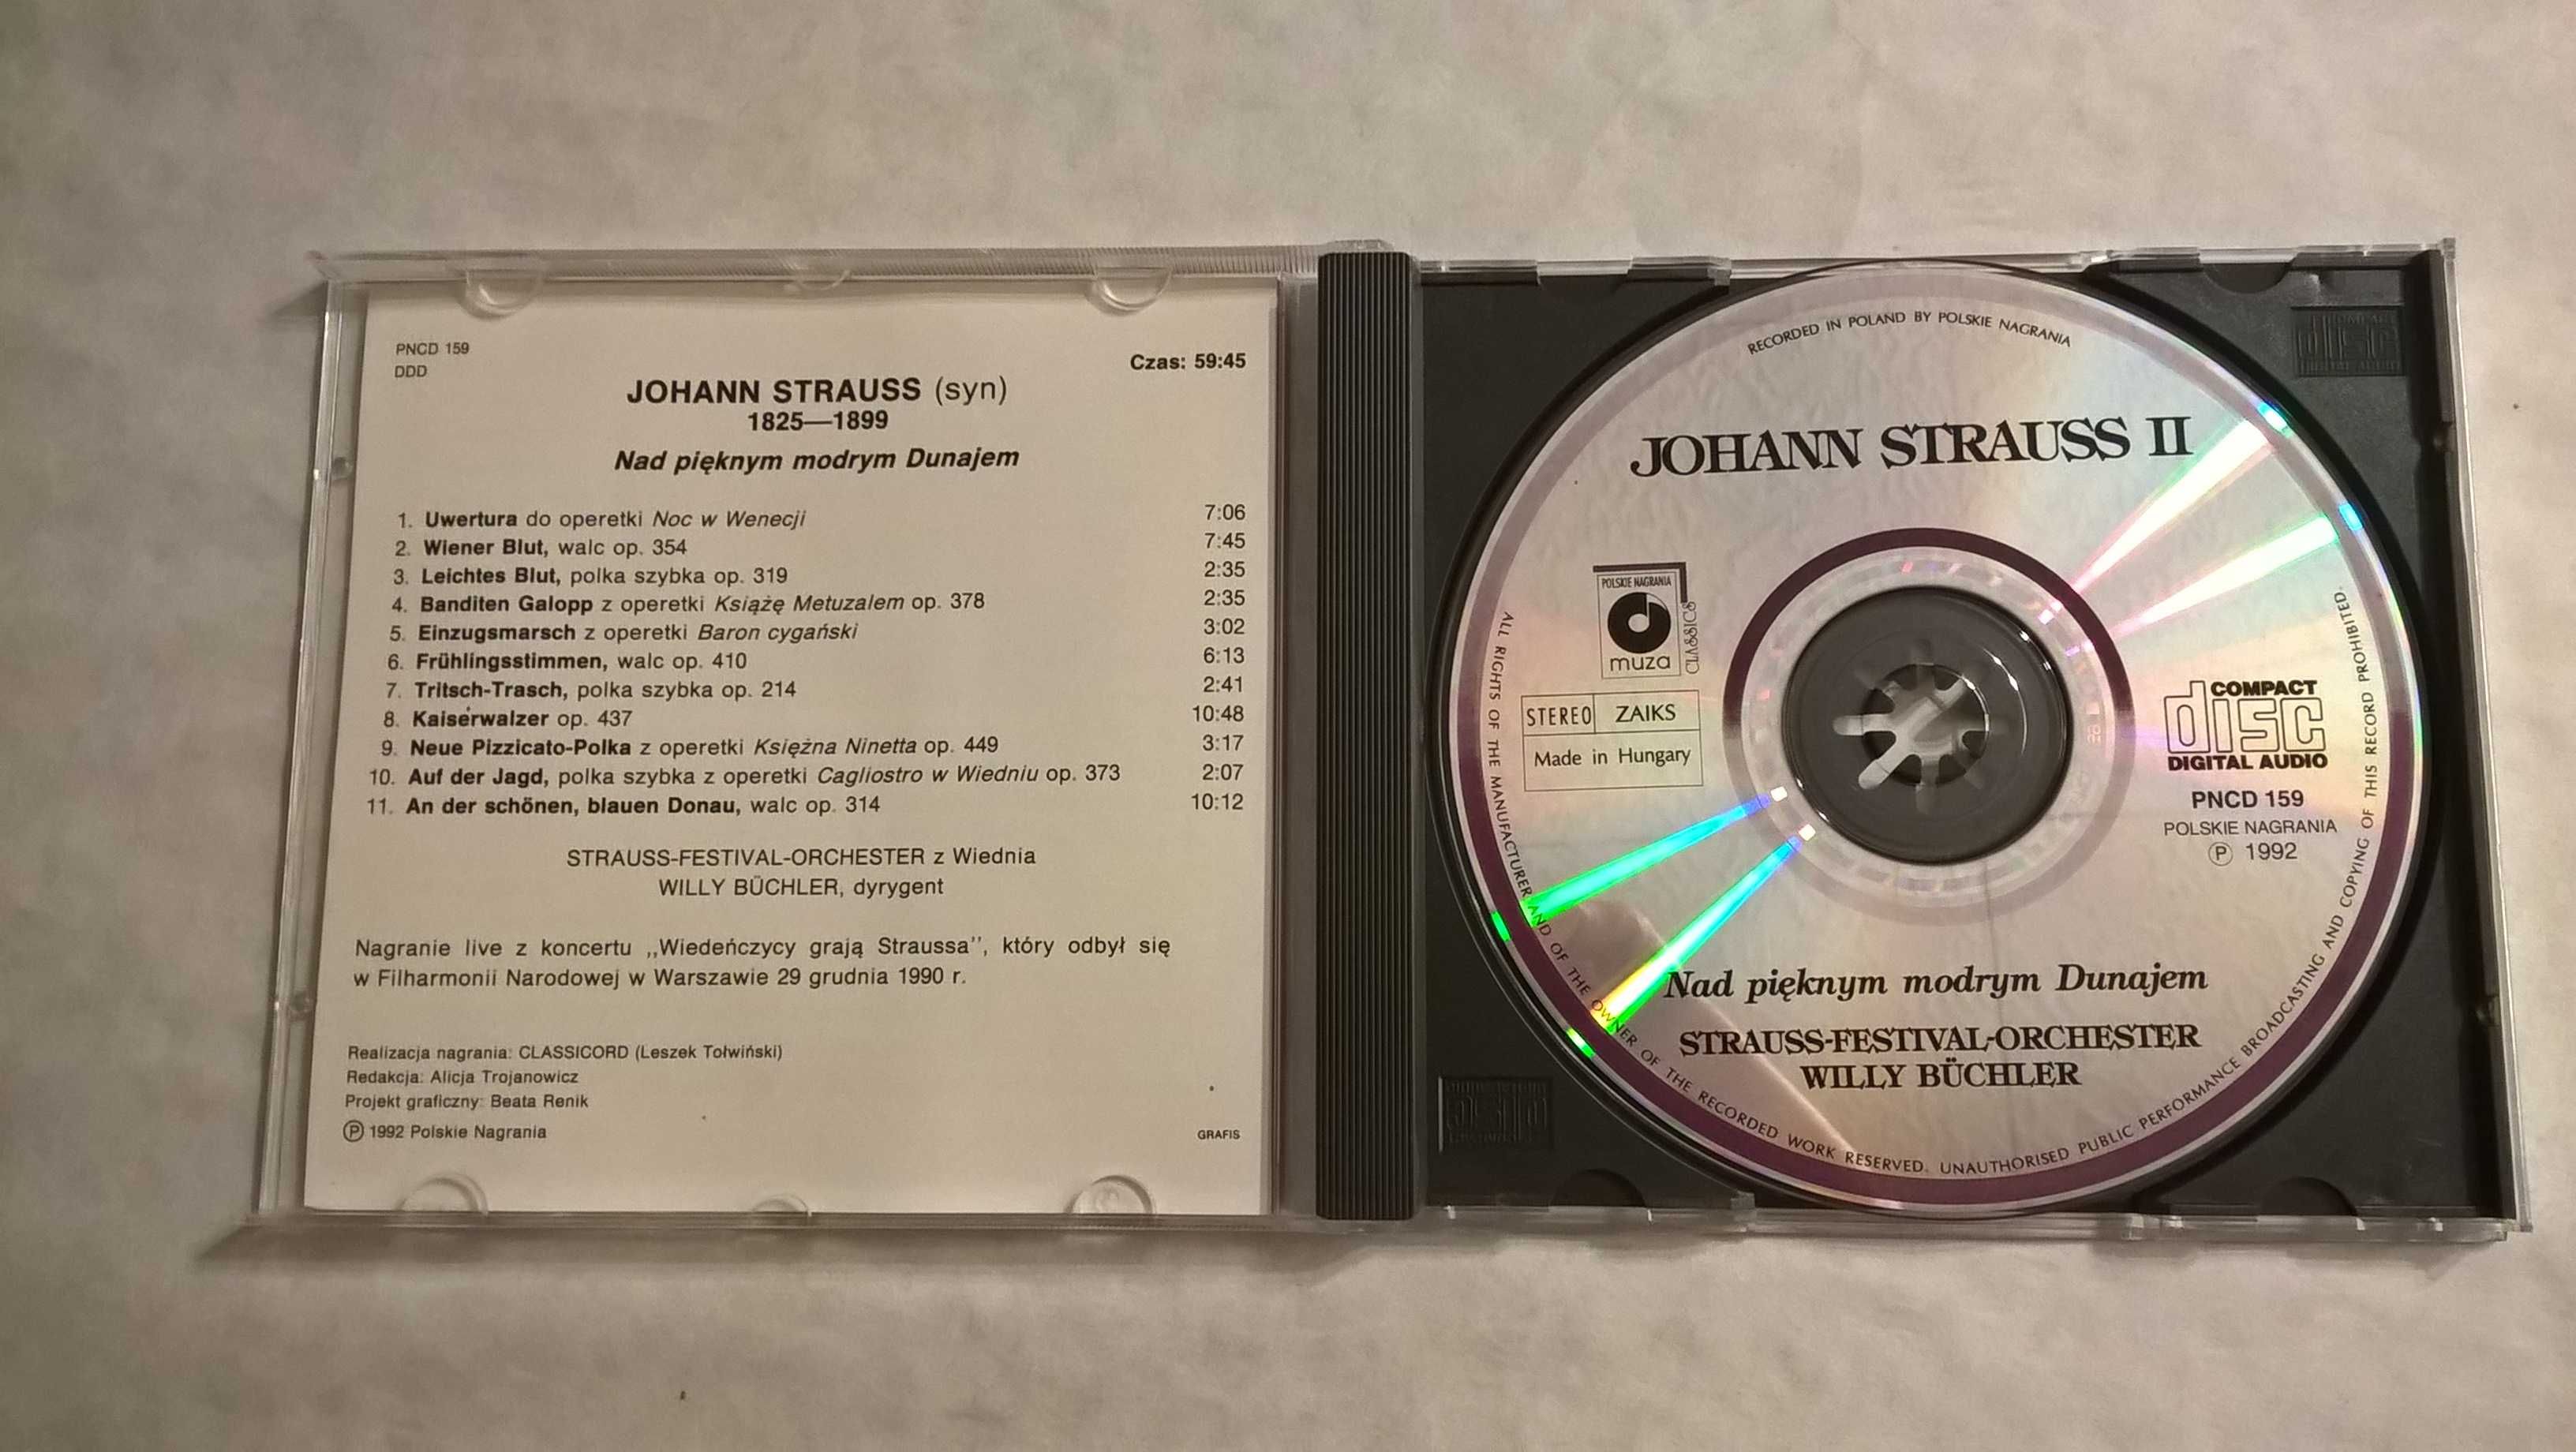 Płyta CD - Johann Strauss II "Nad pięknym modrym Dunajem"